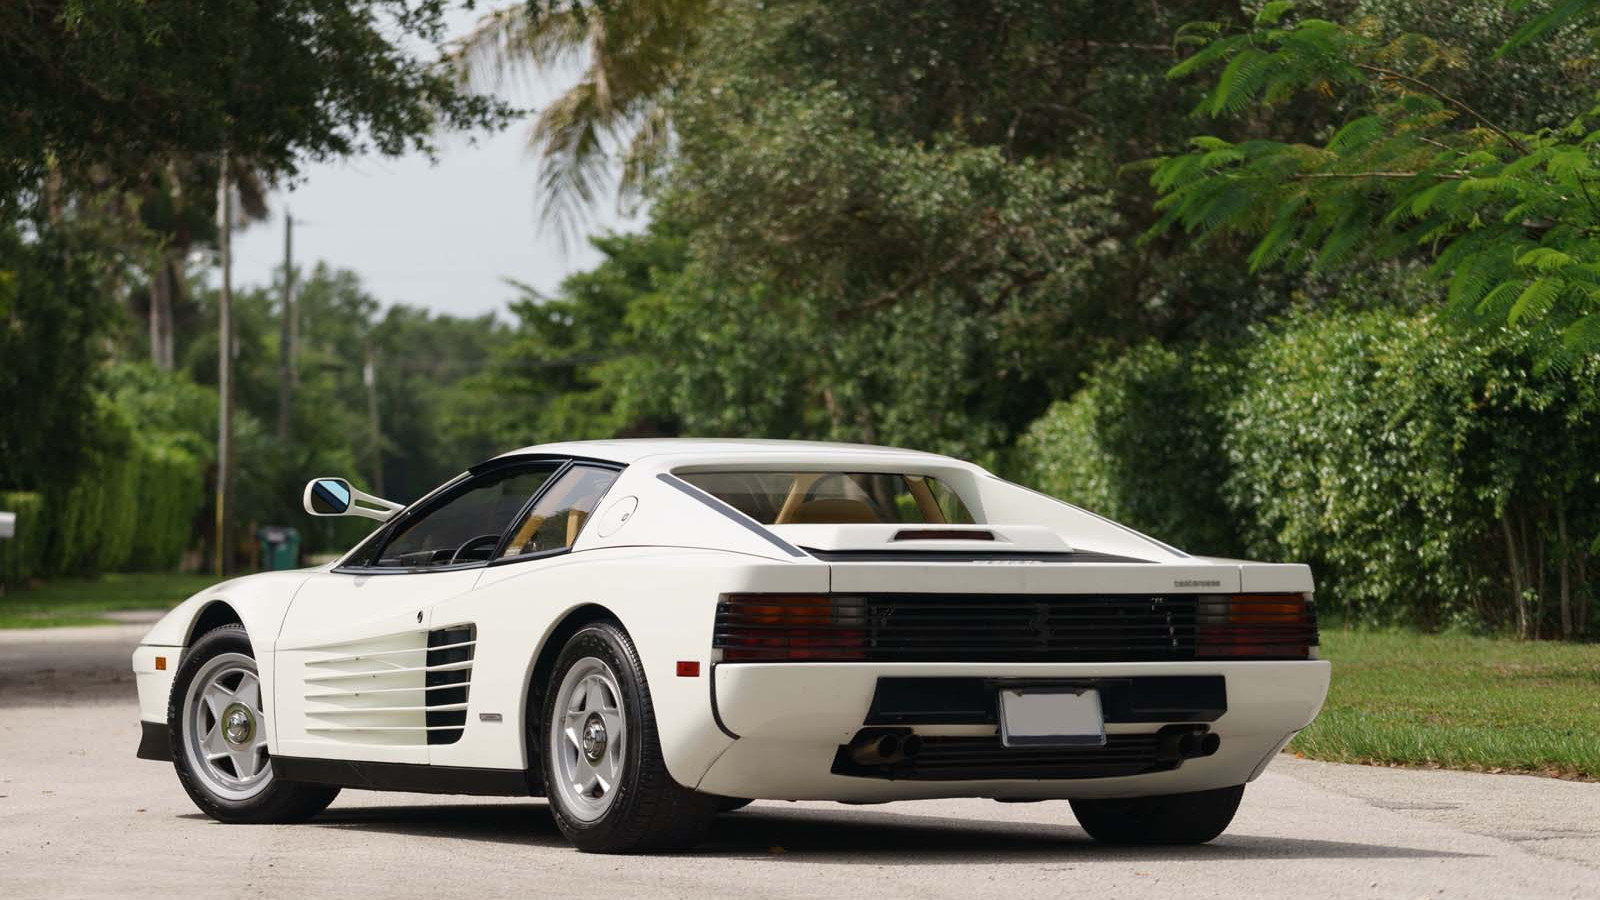 1986 Ferrari Testarossa from ‘Miami Vice’